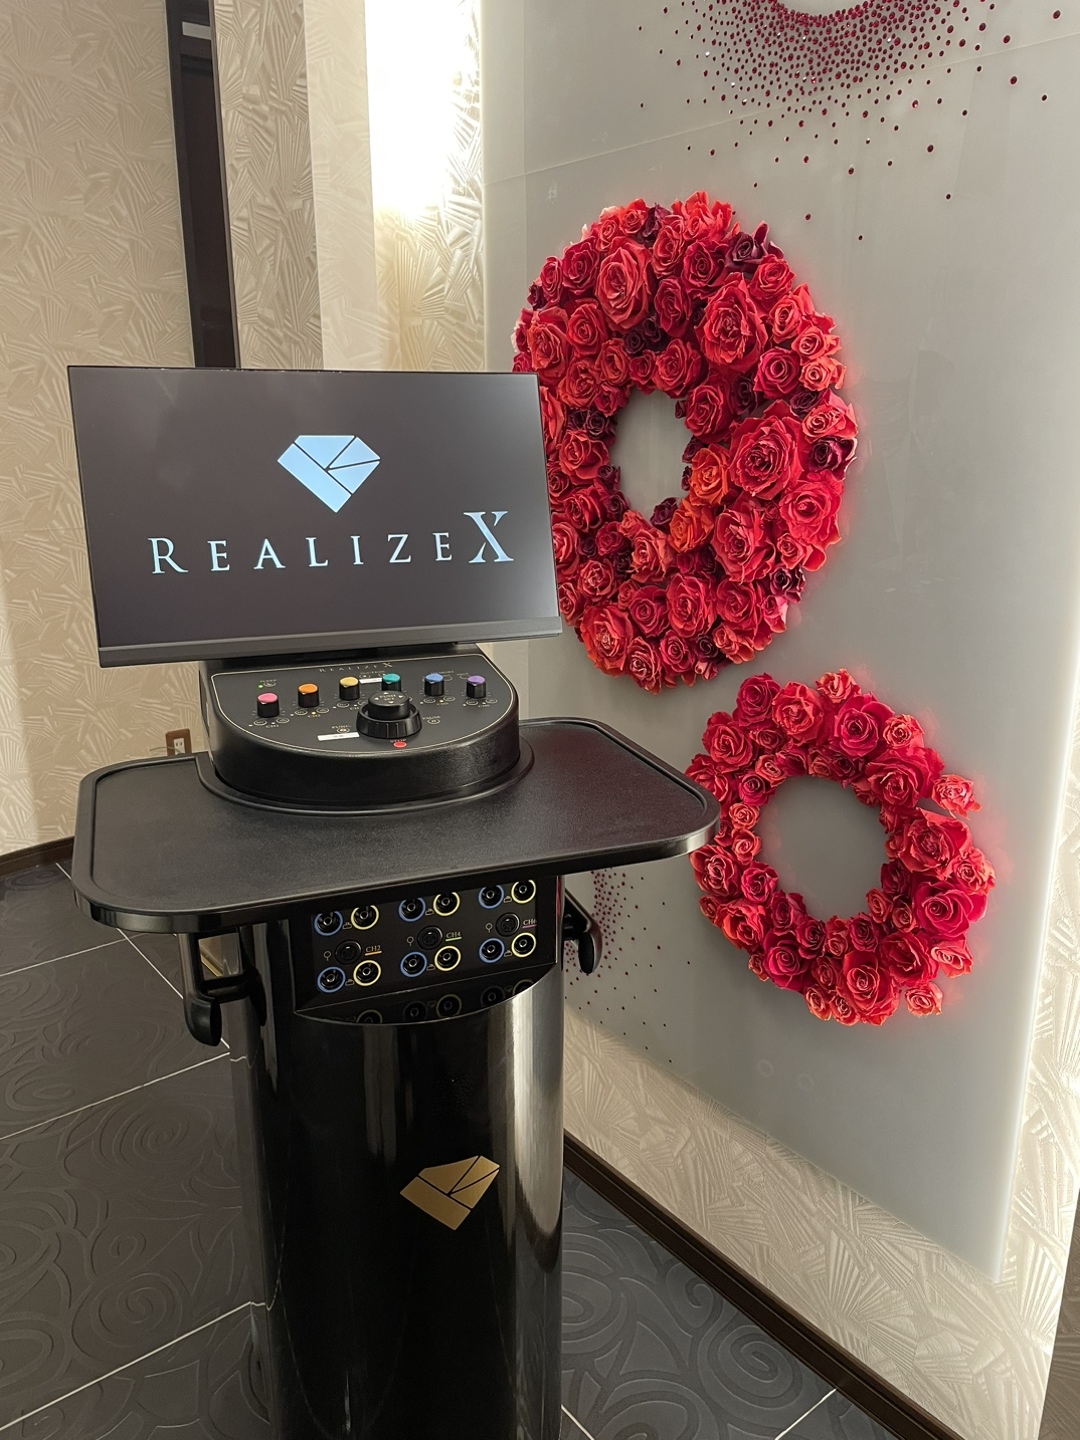 スリムビューティハウスがオリジナル業務用EMSマシン「REALIZE X」を